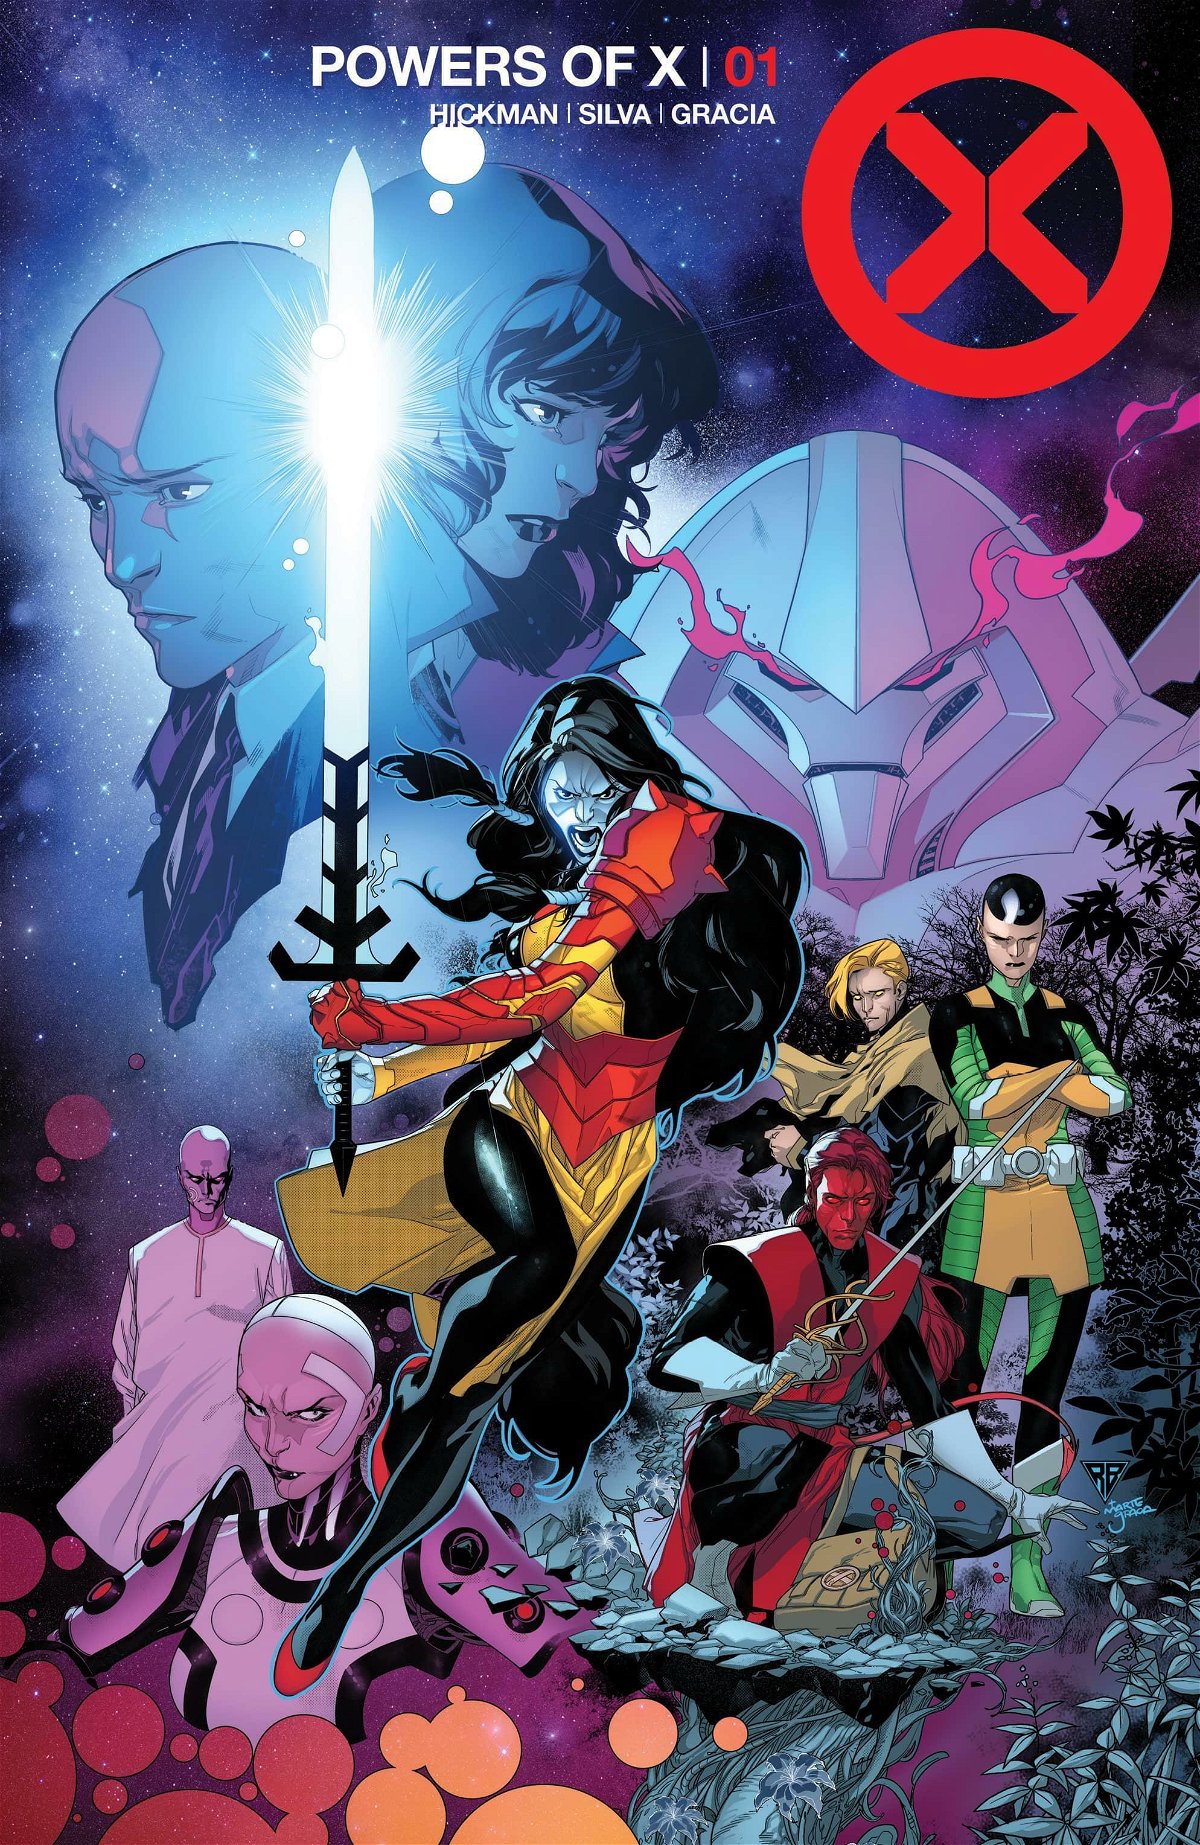 La copertina del primo numero di Power of X